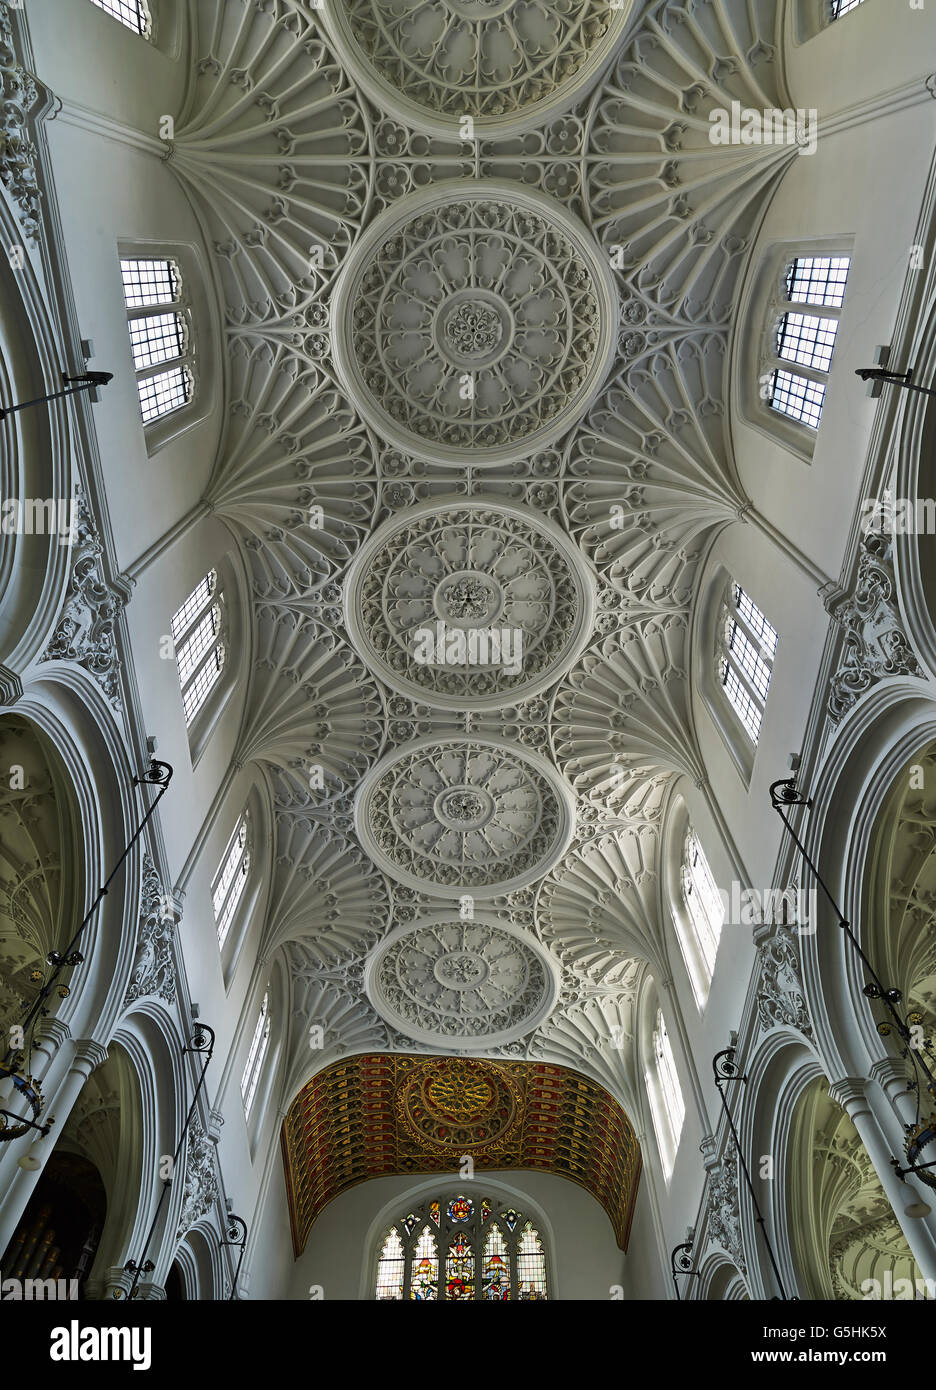 L'église St Mary Aldermary, dans la ville de Londres, ventilateur plafond voûte gothique Banque D'Images